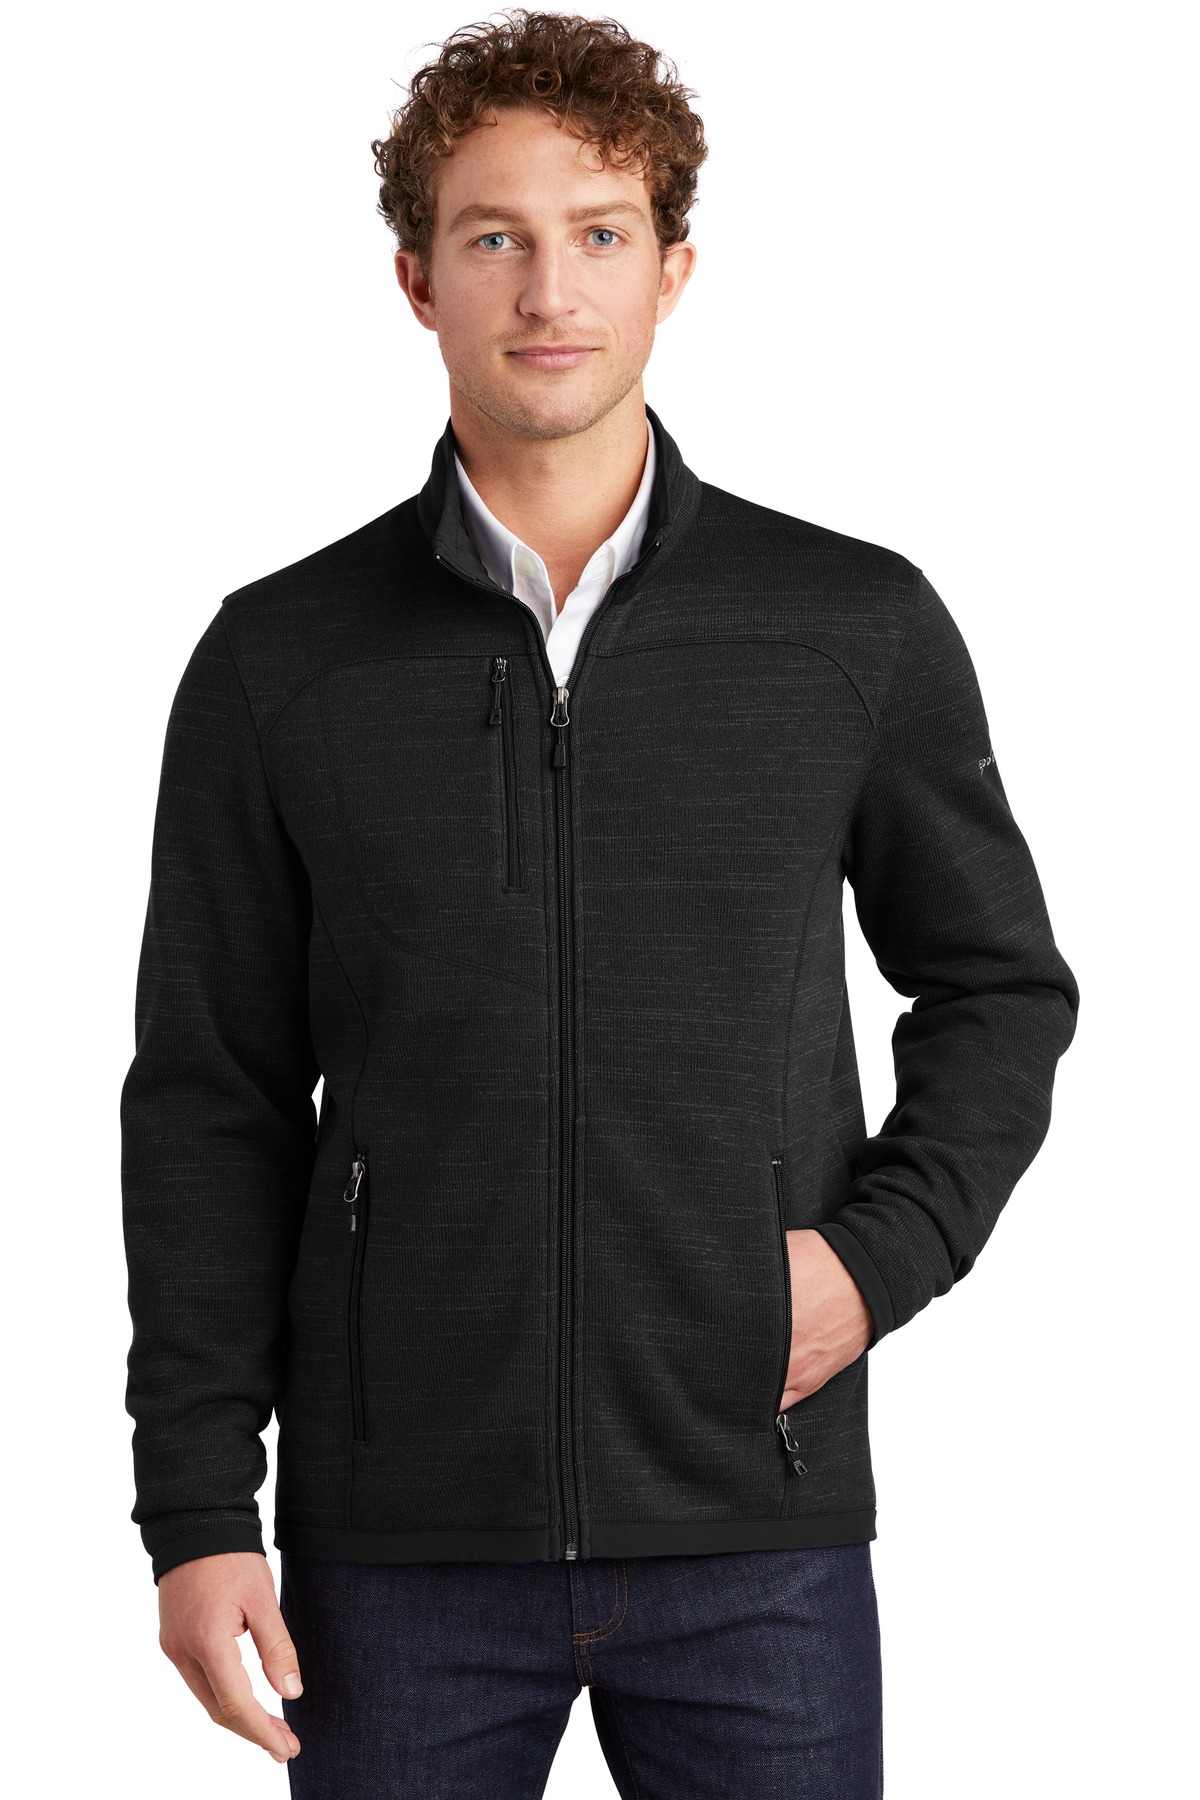 Eddie Bauer Outerwear, Sweat shirts & Fleece for Hospitality ® Sweater Fleece Full-Zip.-Eddie Bauer